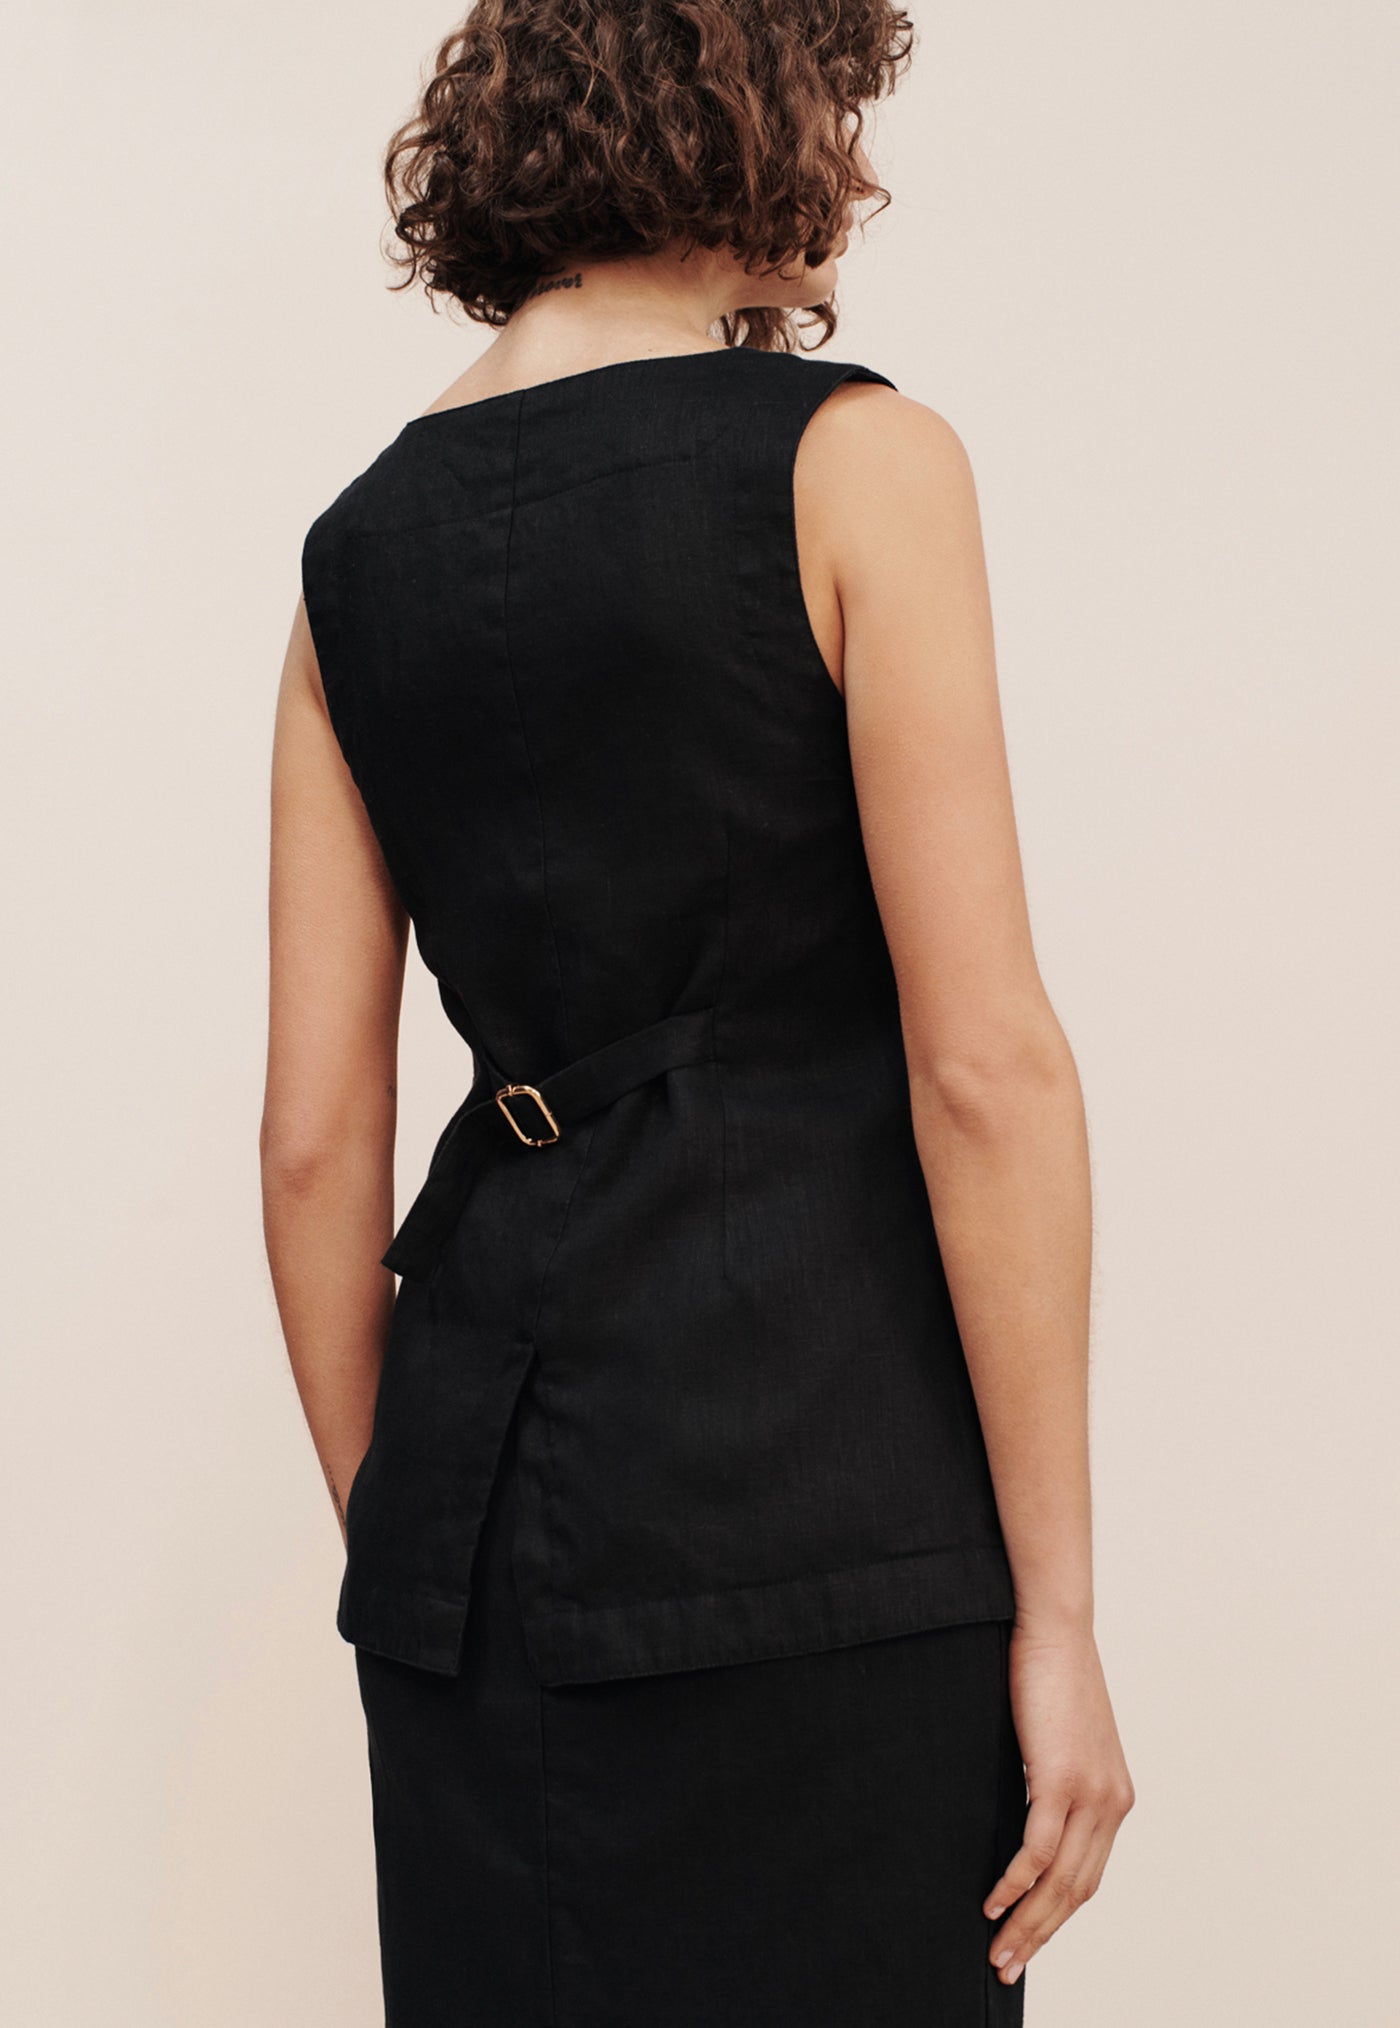 Emma Vest - Black sold by Angel Divine